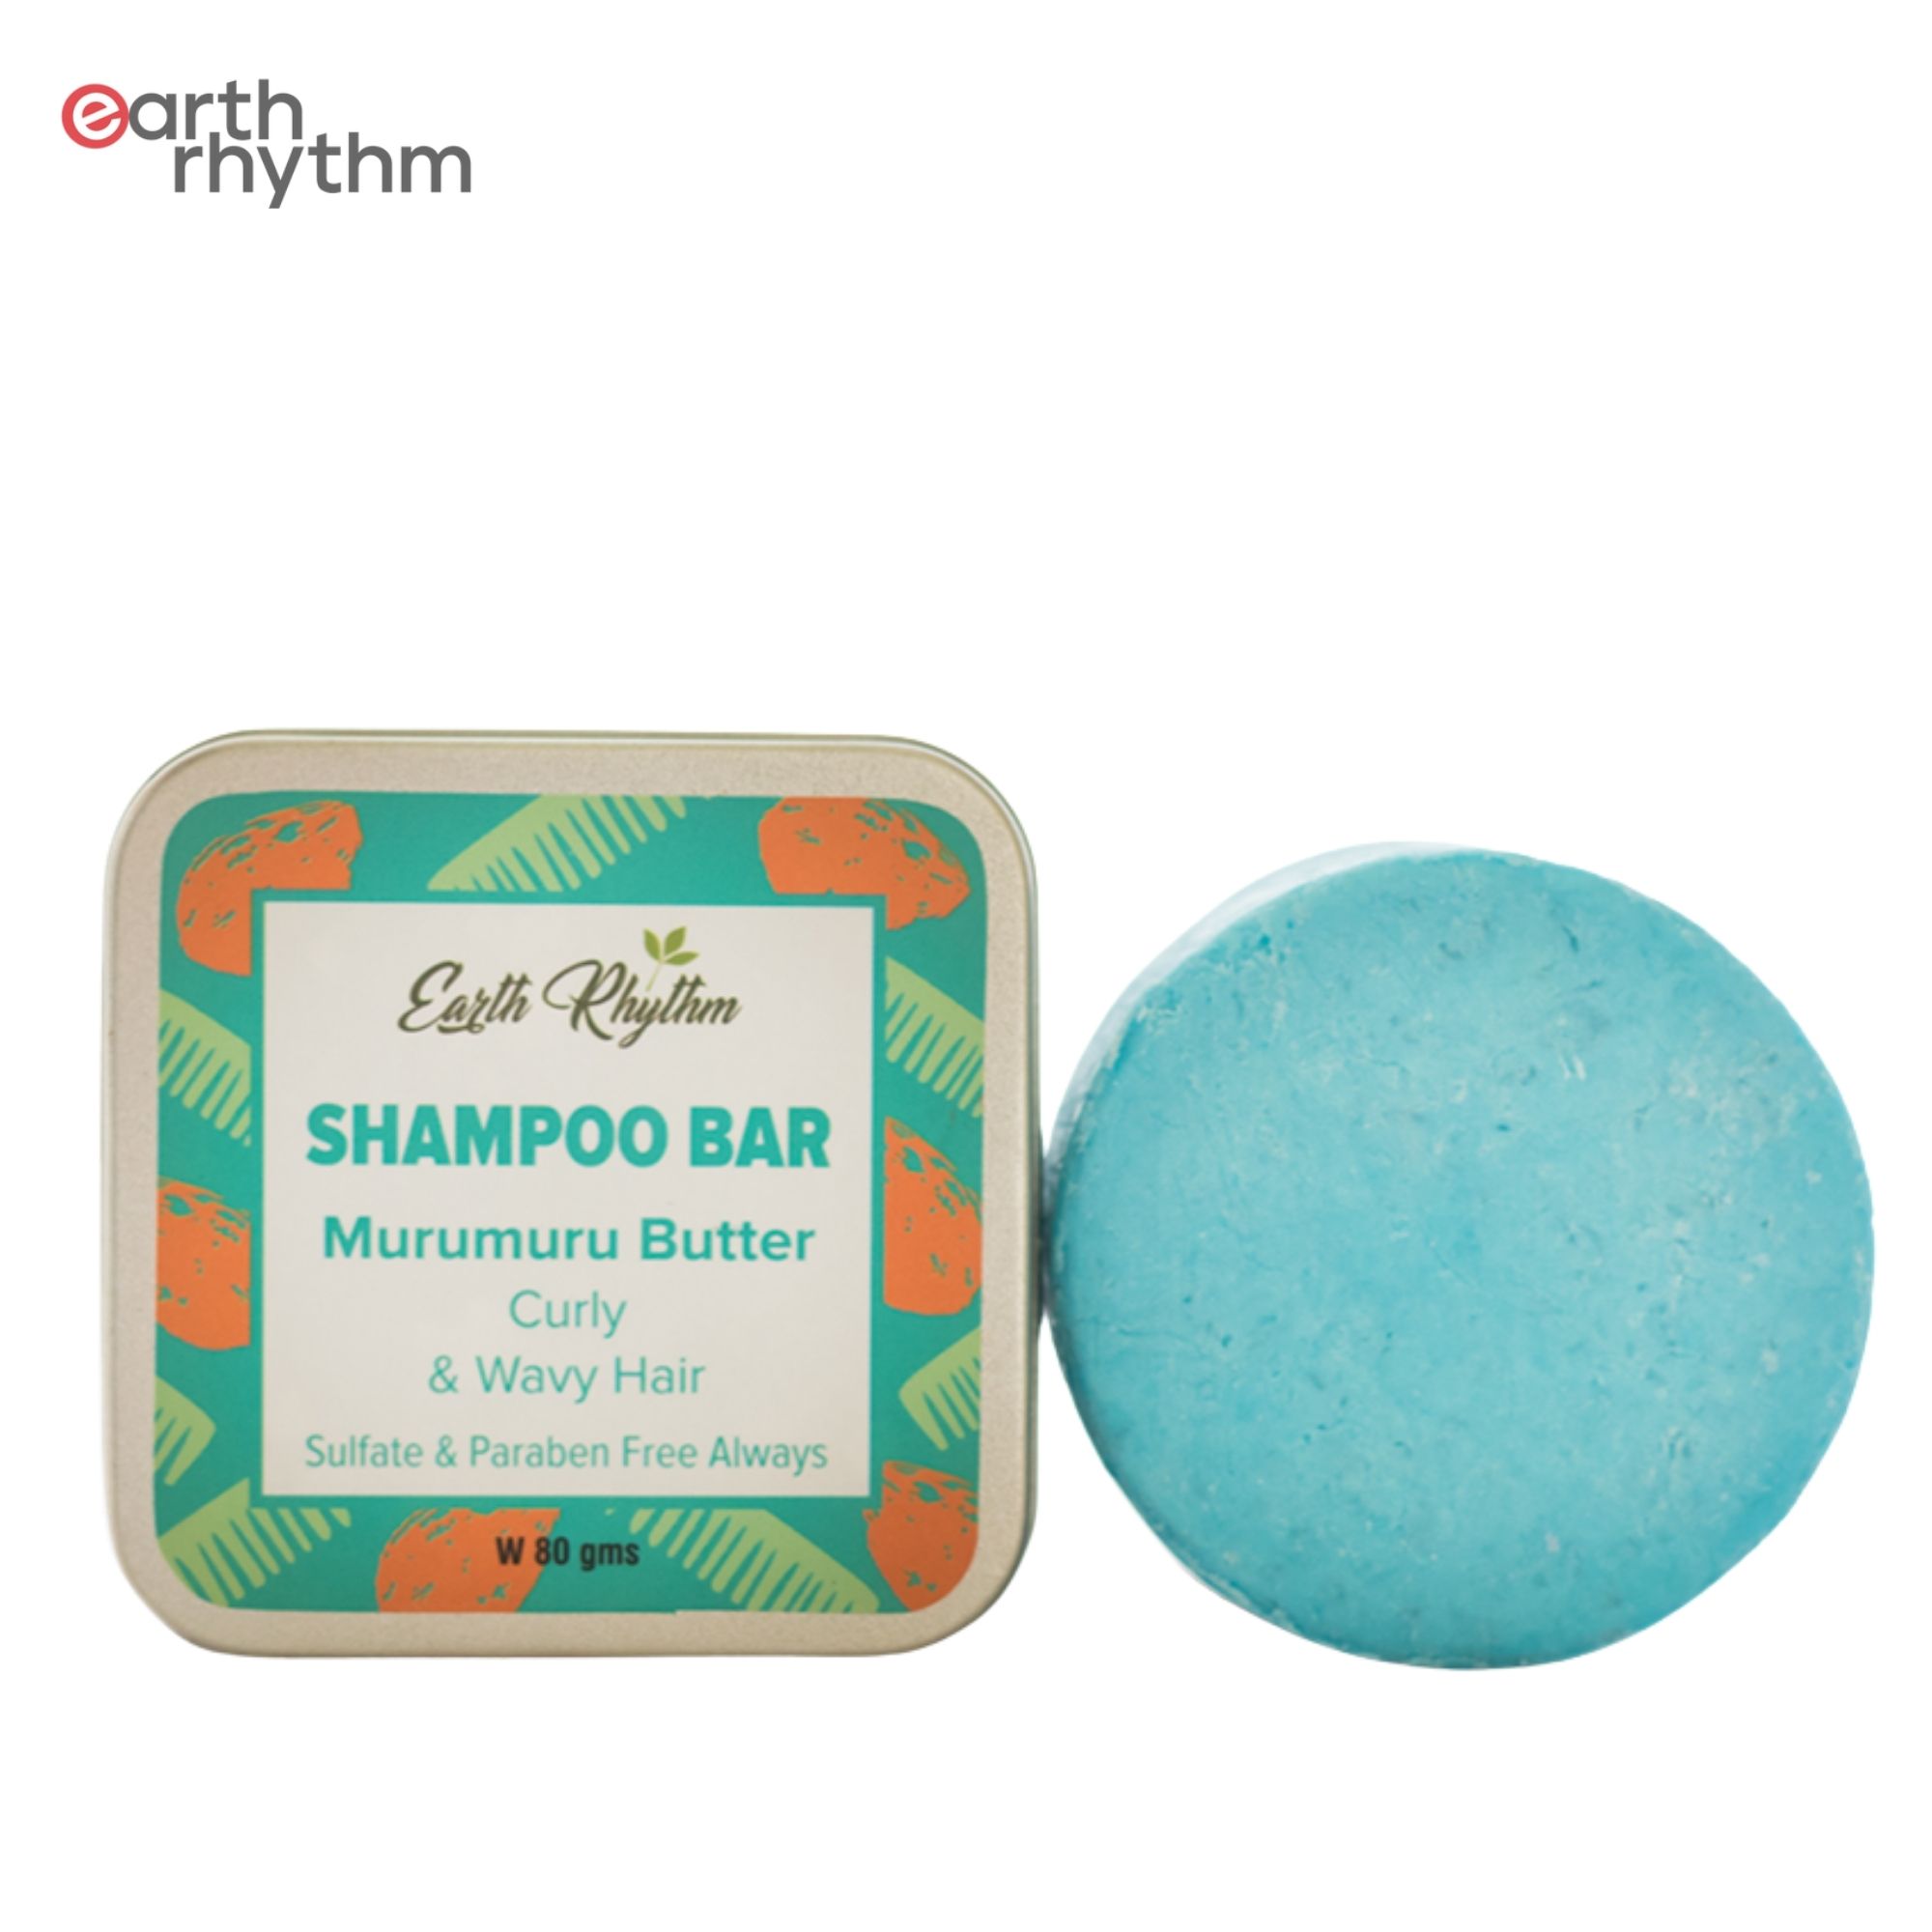 Earth Rhythm Murumuru Butter Shampoo Bar for Curly & Wavy Hair - 80 gm (Tin Box)